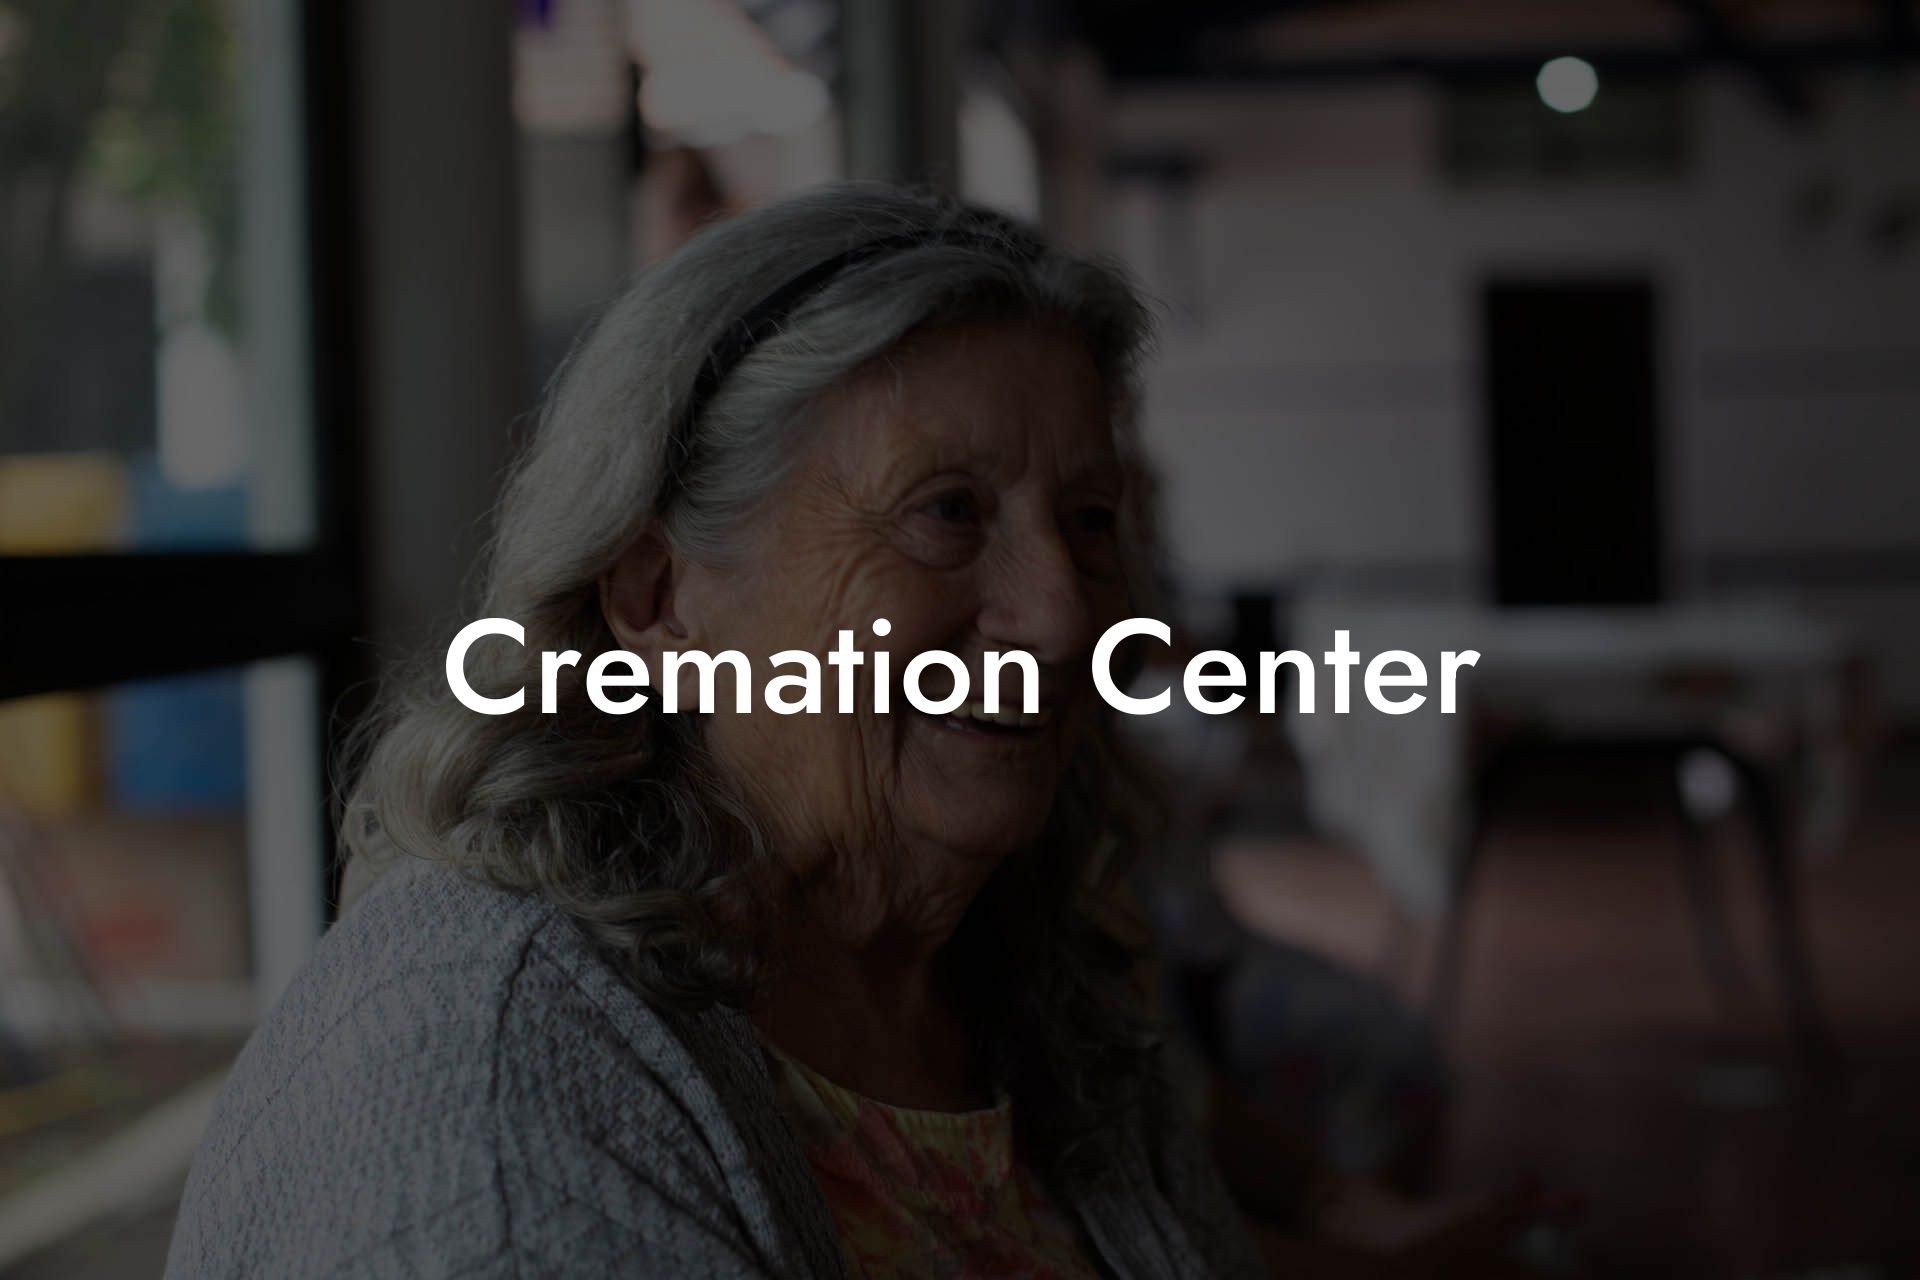 Cremation Center